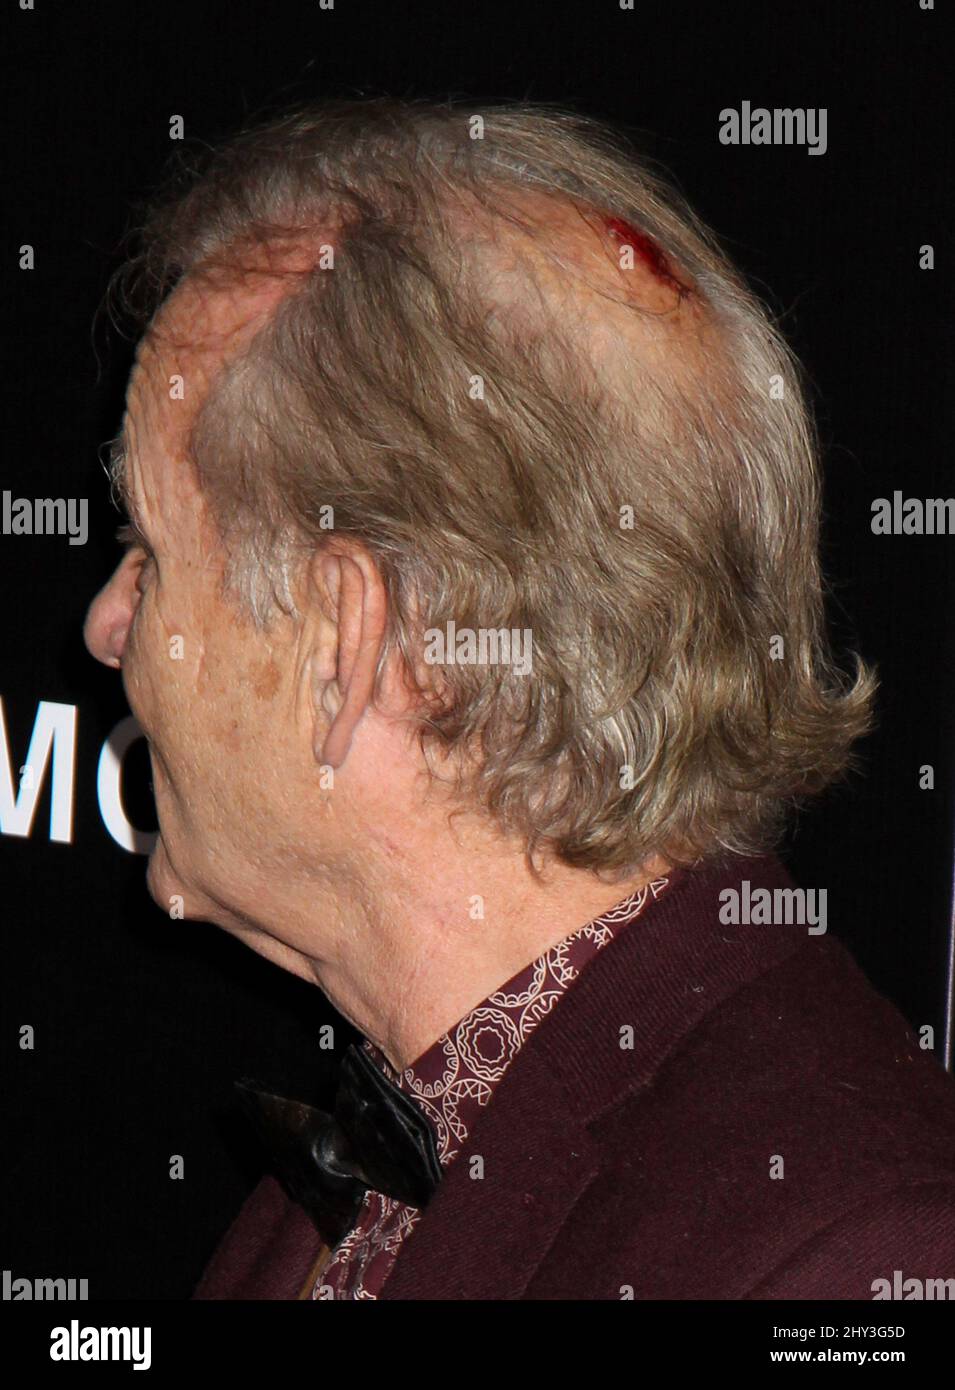 Bill Murray mit einer fies aussehenden Kopfverletzung nimmt an der Premiere von „The Monuments Men“ im Ziegfeld Theatre in New York City Teil. Stockfoto